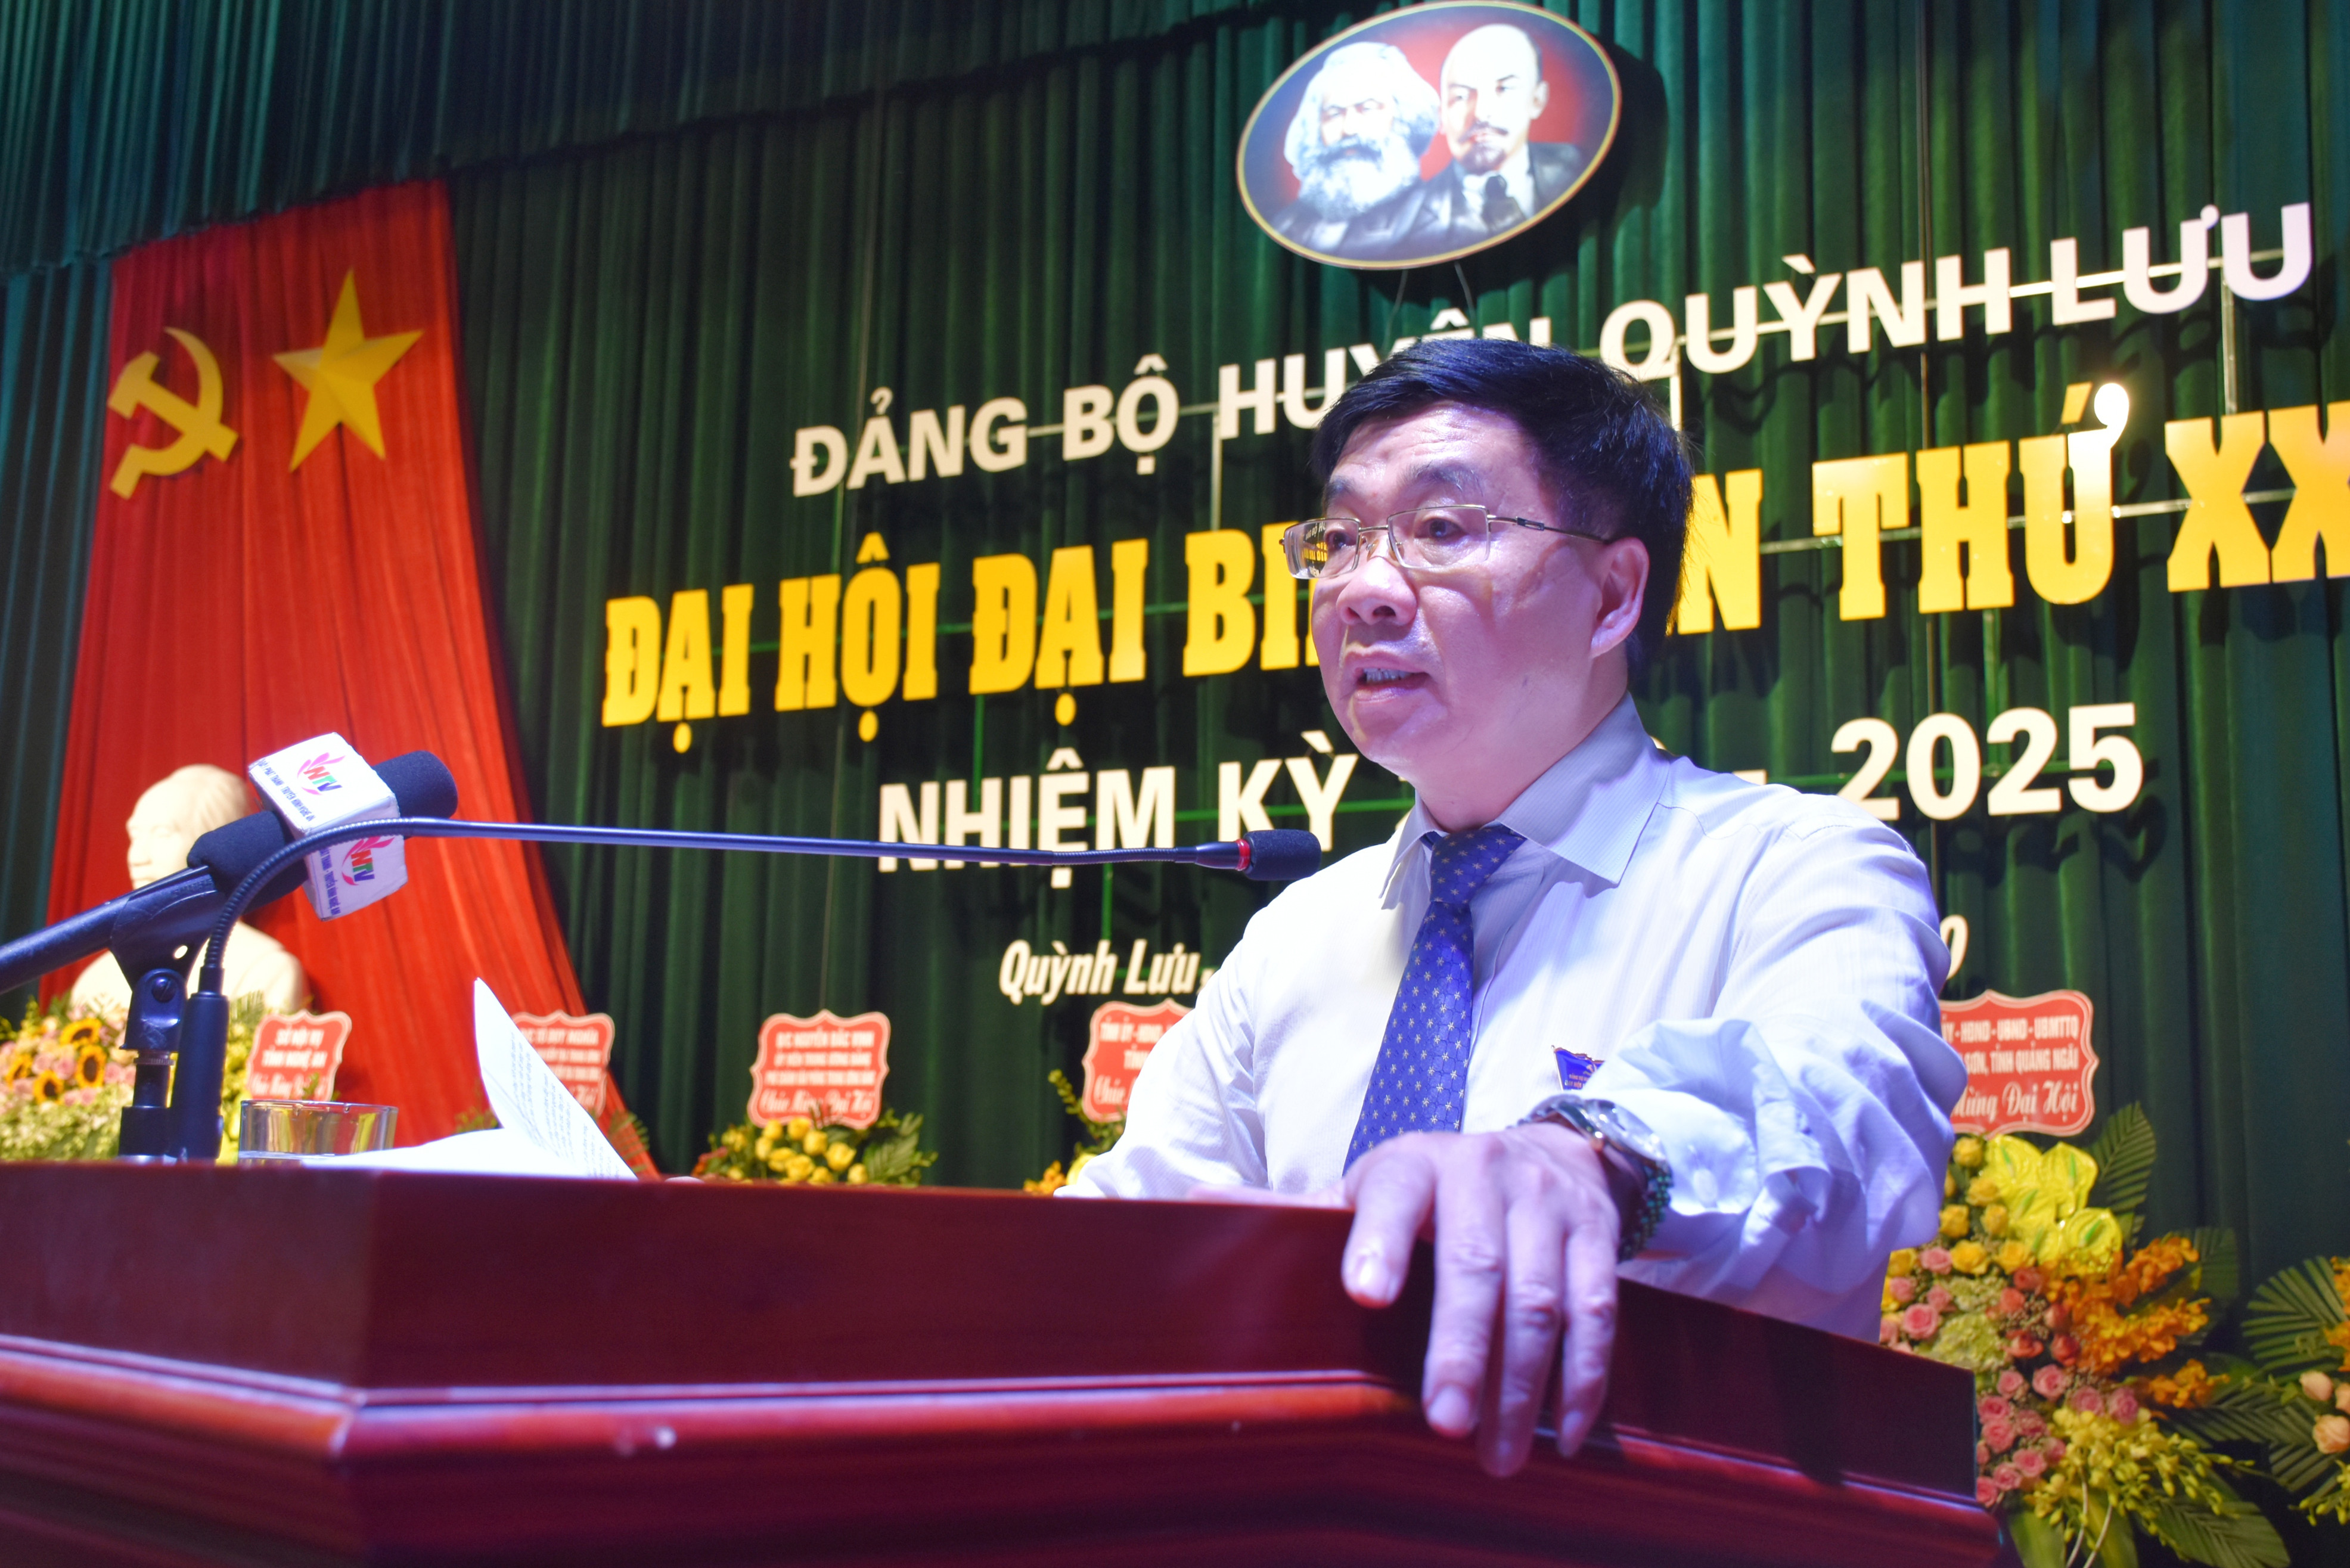 Phó Bí thư Tỉnh ủy Nguyễn Văn Thông phát biểu chỉ đạo tại đại hội. Ảnh: Thanh Lê